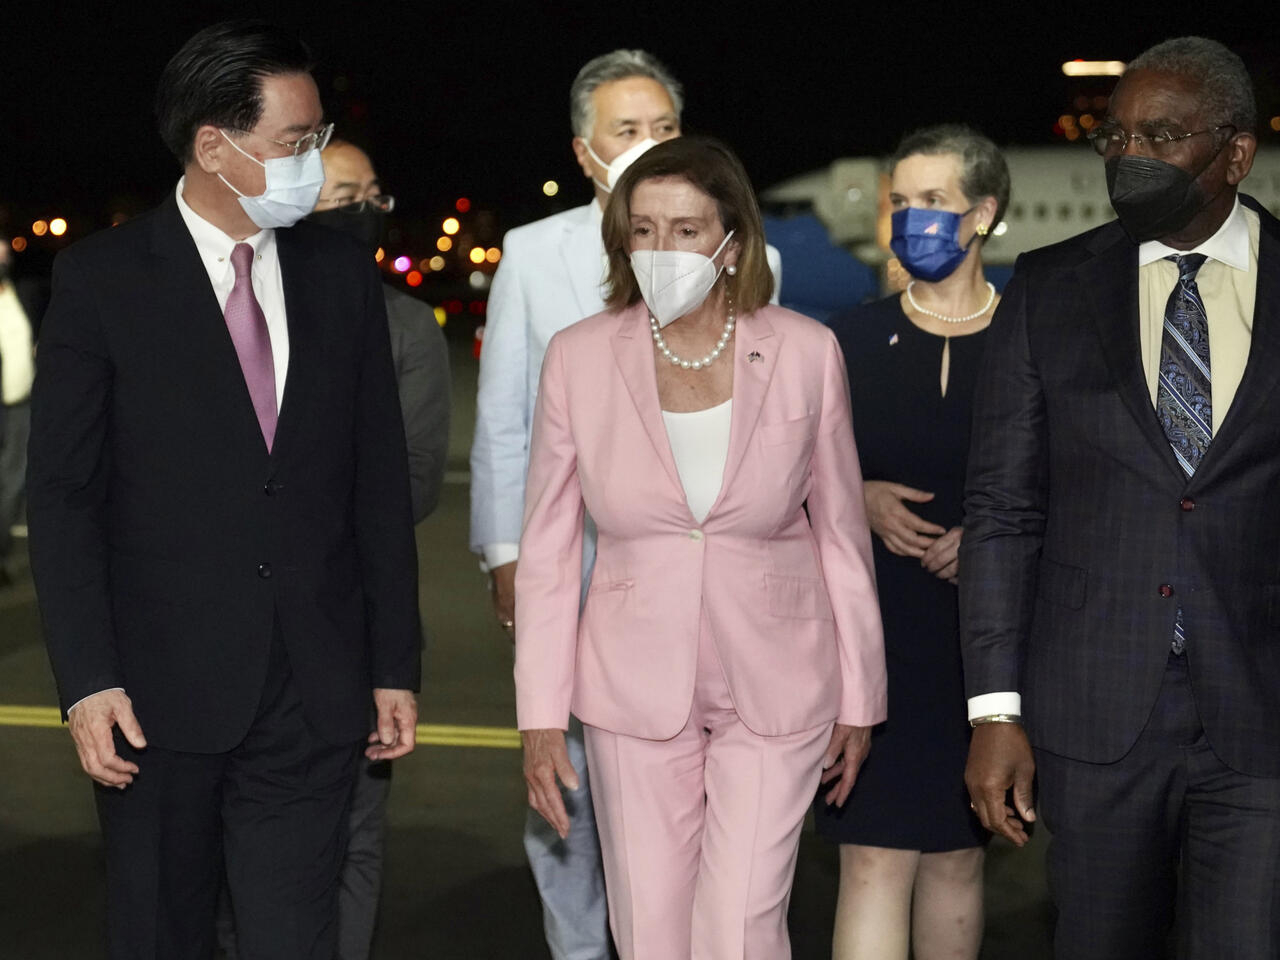 وفد من الكونغرس يزور دولة تايوان بعد زيارة نانسي بيلوسي تايبيه